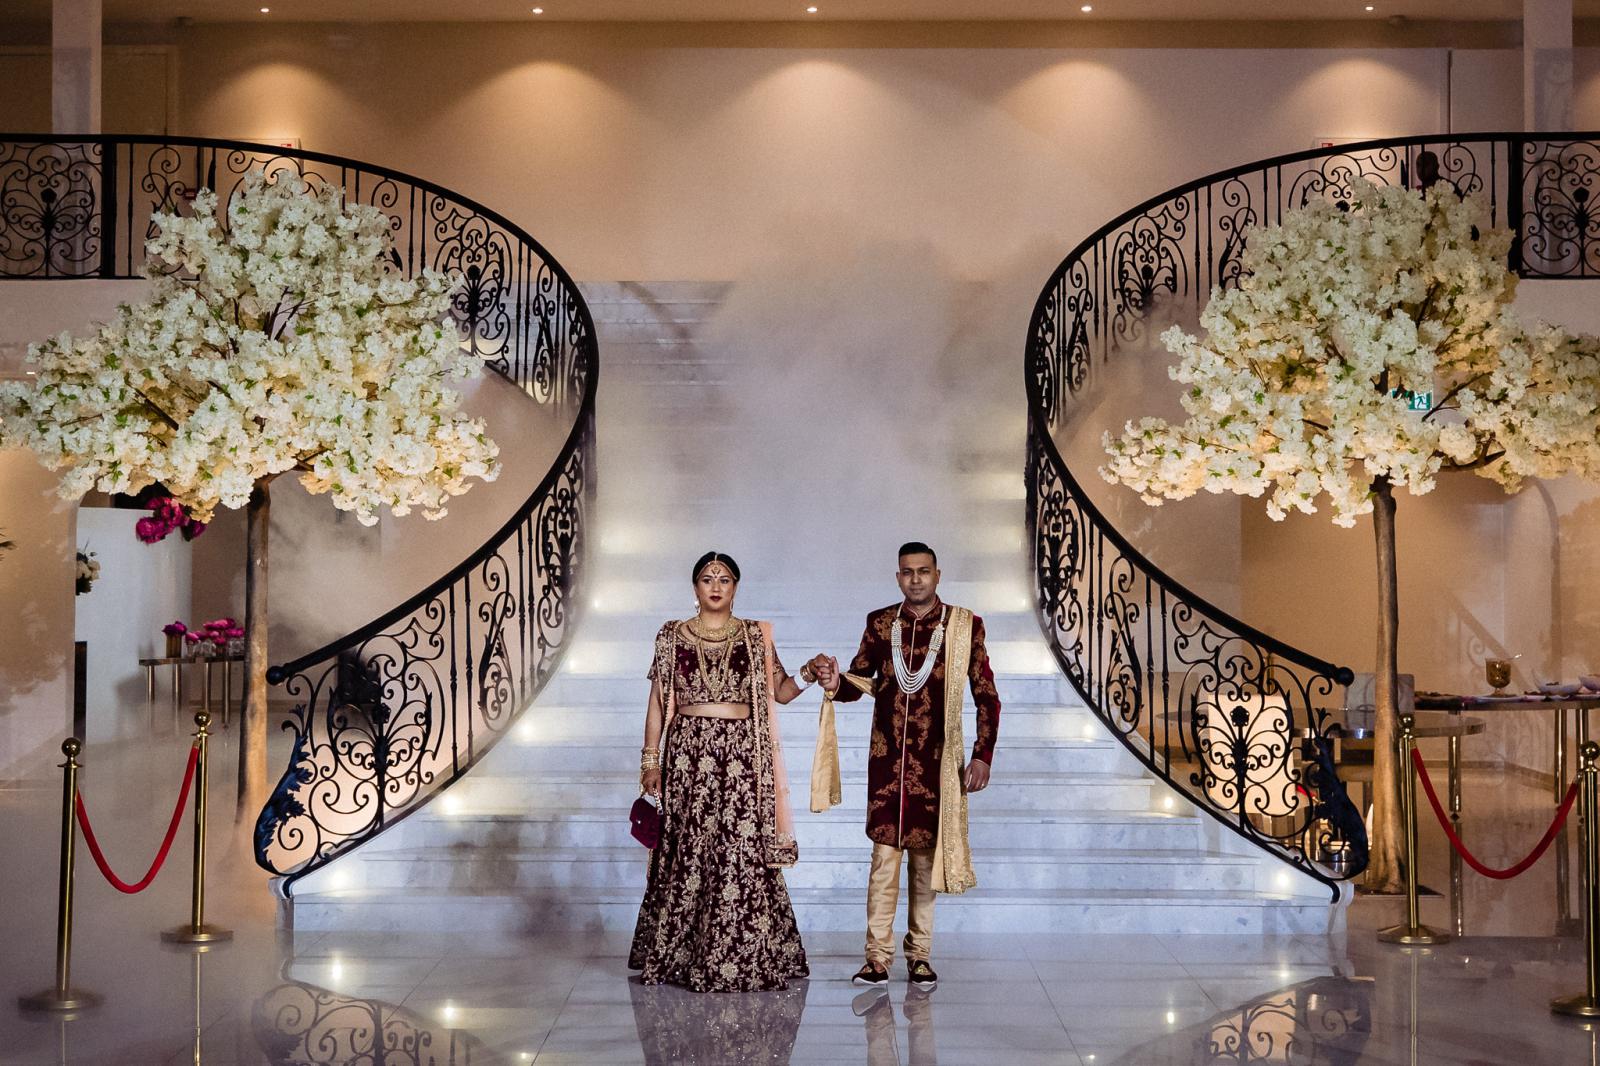 grand entree bruidspaar voor openingsdans  hindoestaanse bruiloft door trouwfotograaf rey events almere